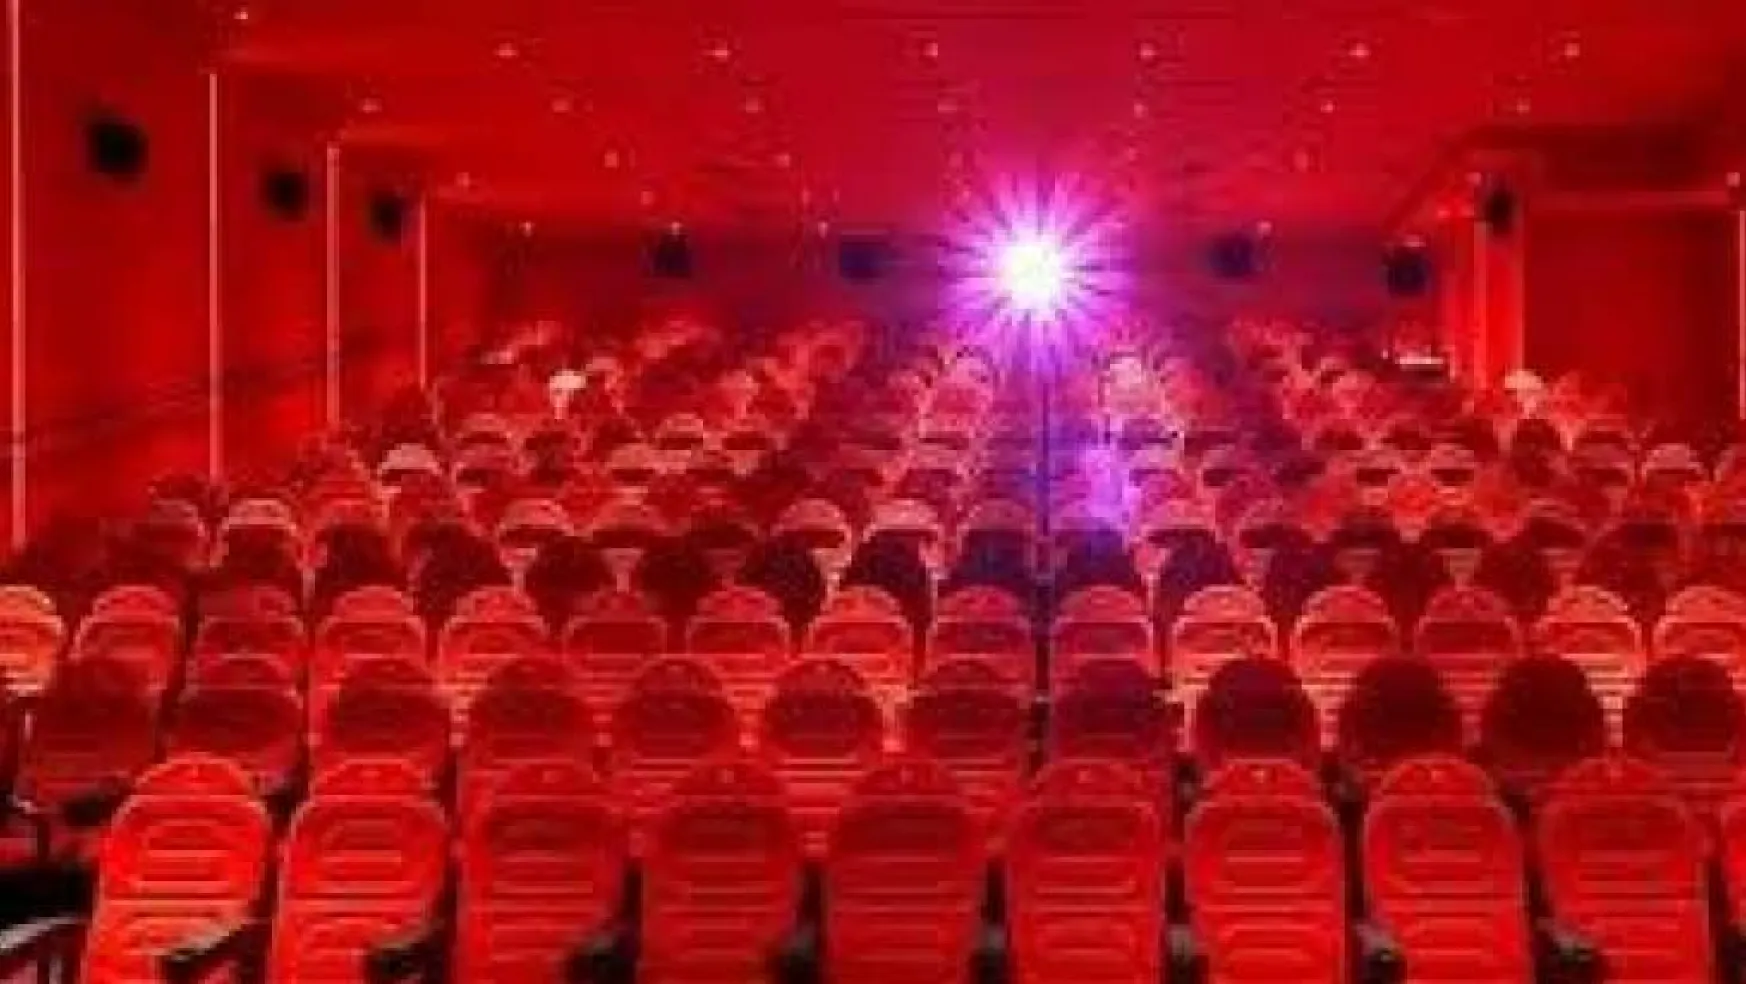 Malatya ilindeki sinema salonu sayısı 20'dir.